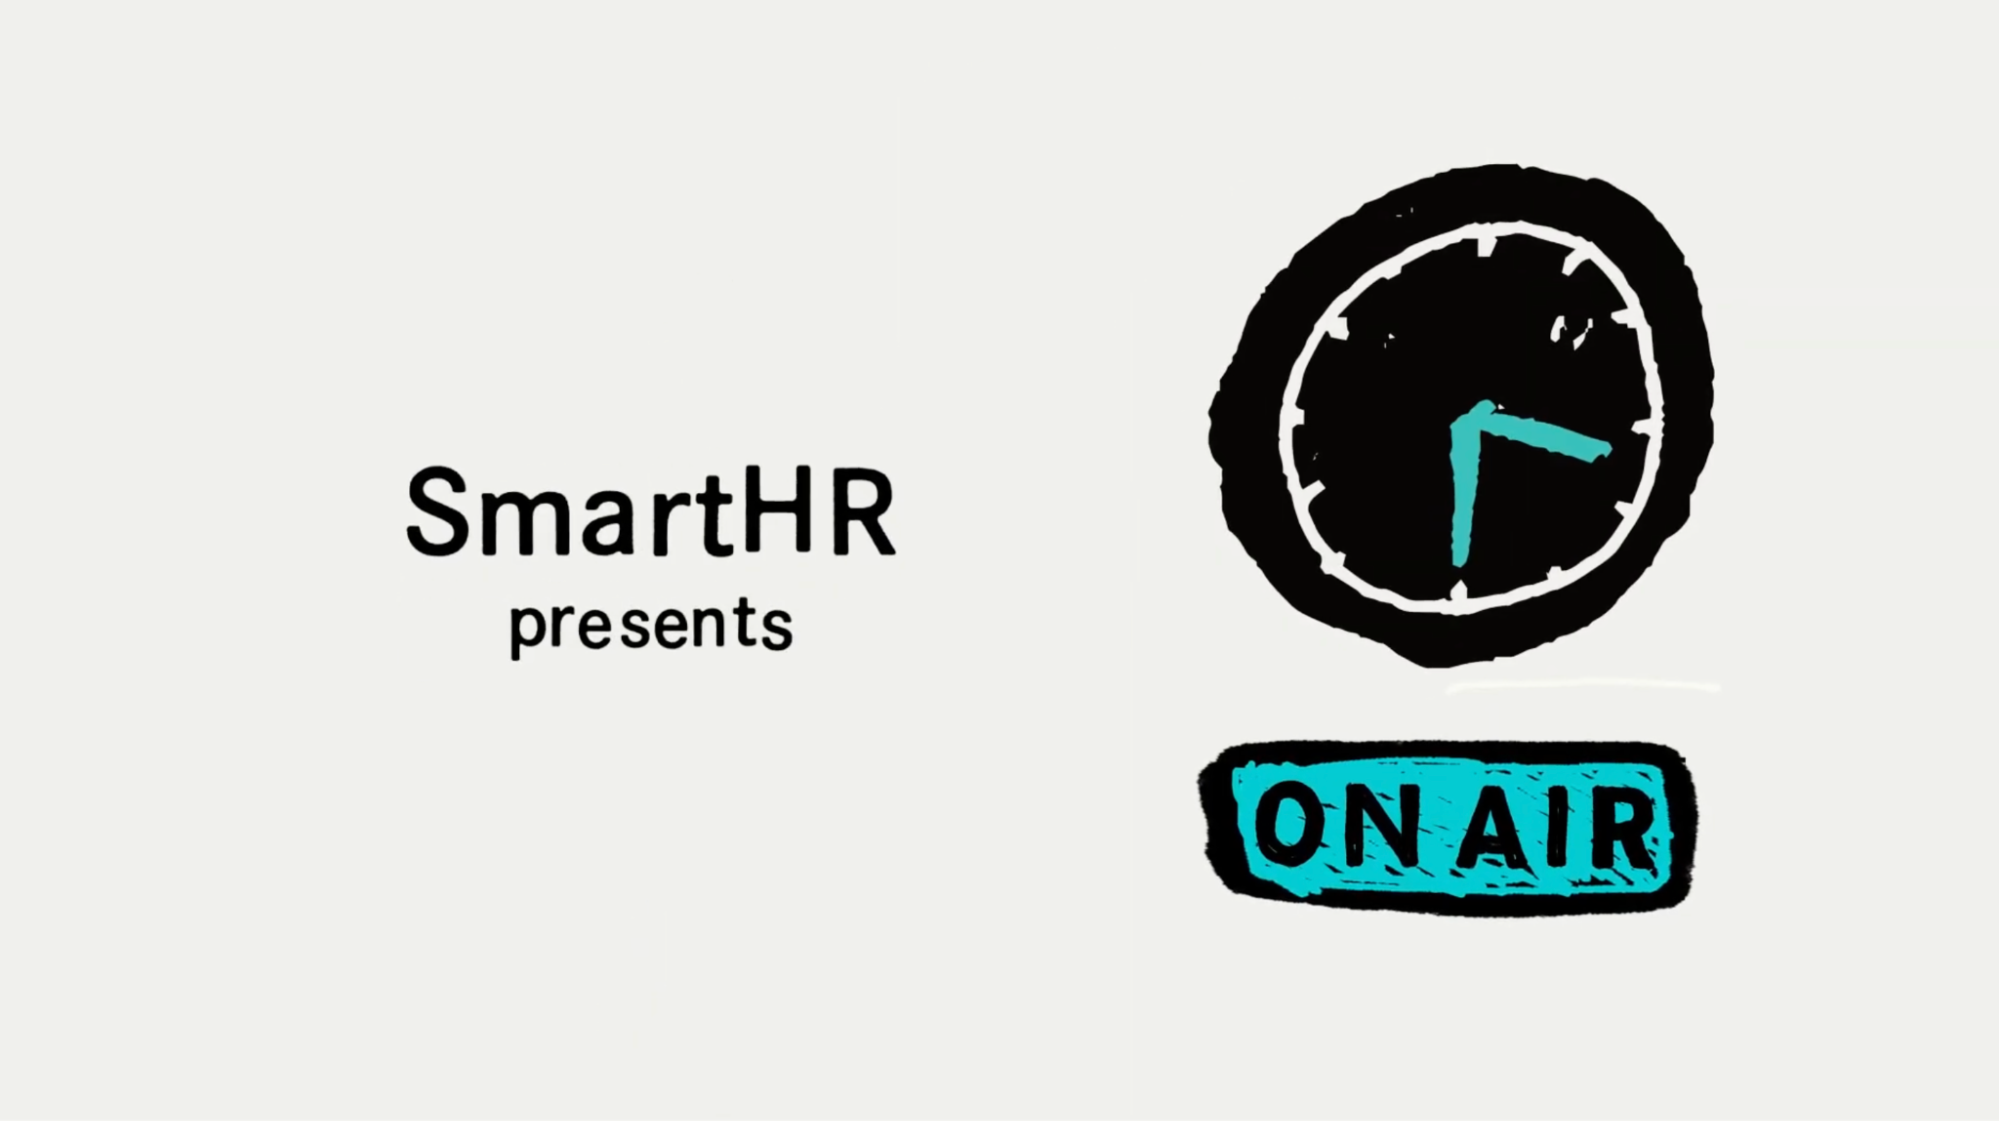 「SmartHR presents」と左手に、右手に「ON AIR」の文字と時計のイラストが描かれている。